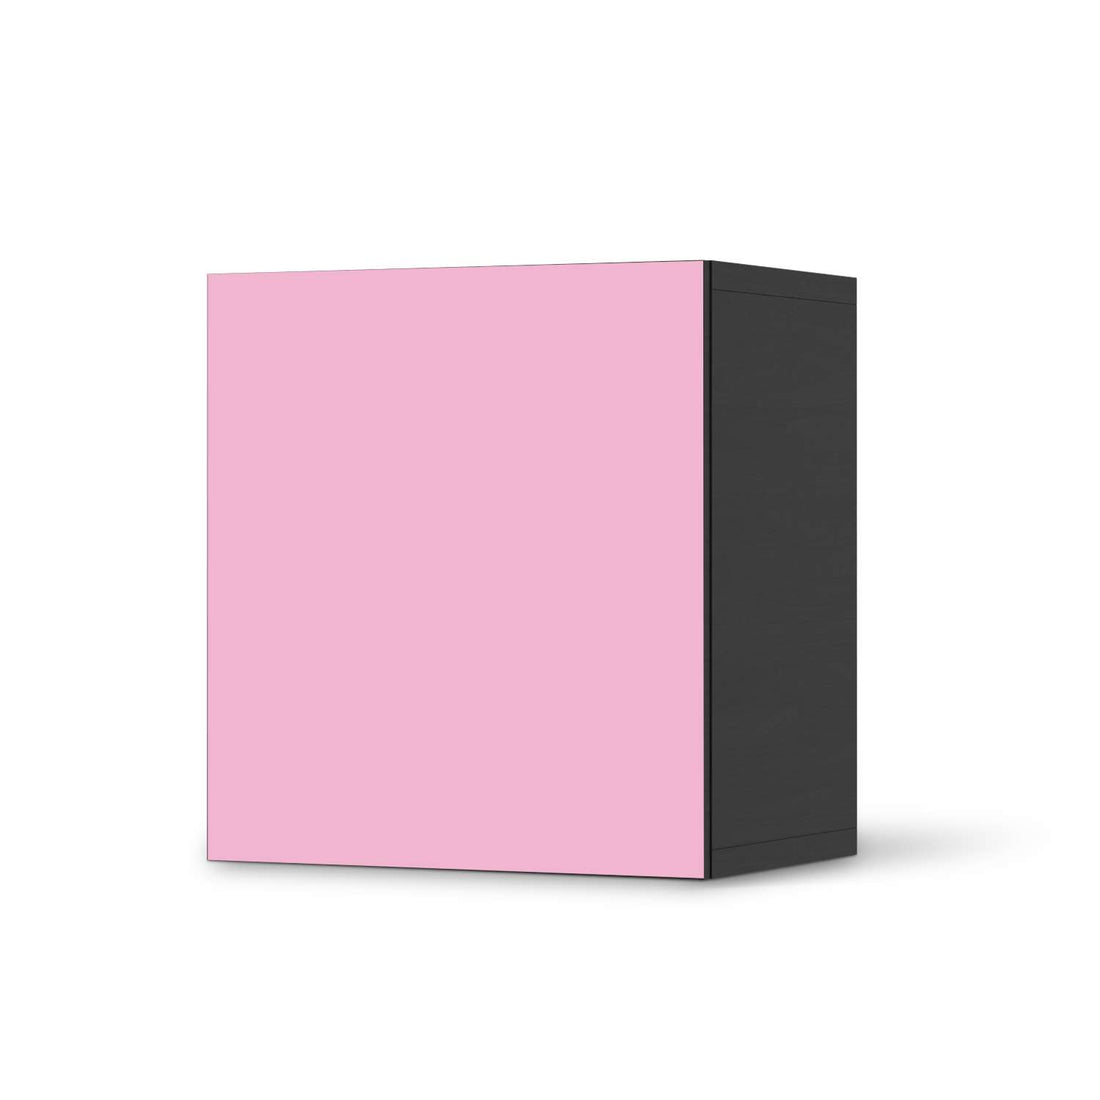 Klebefolie für Möbel Pink Light - IKEA Besta Regal 1 Türe - schwarz